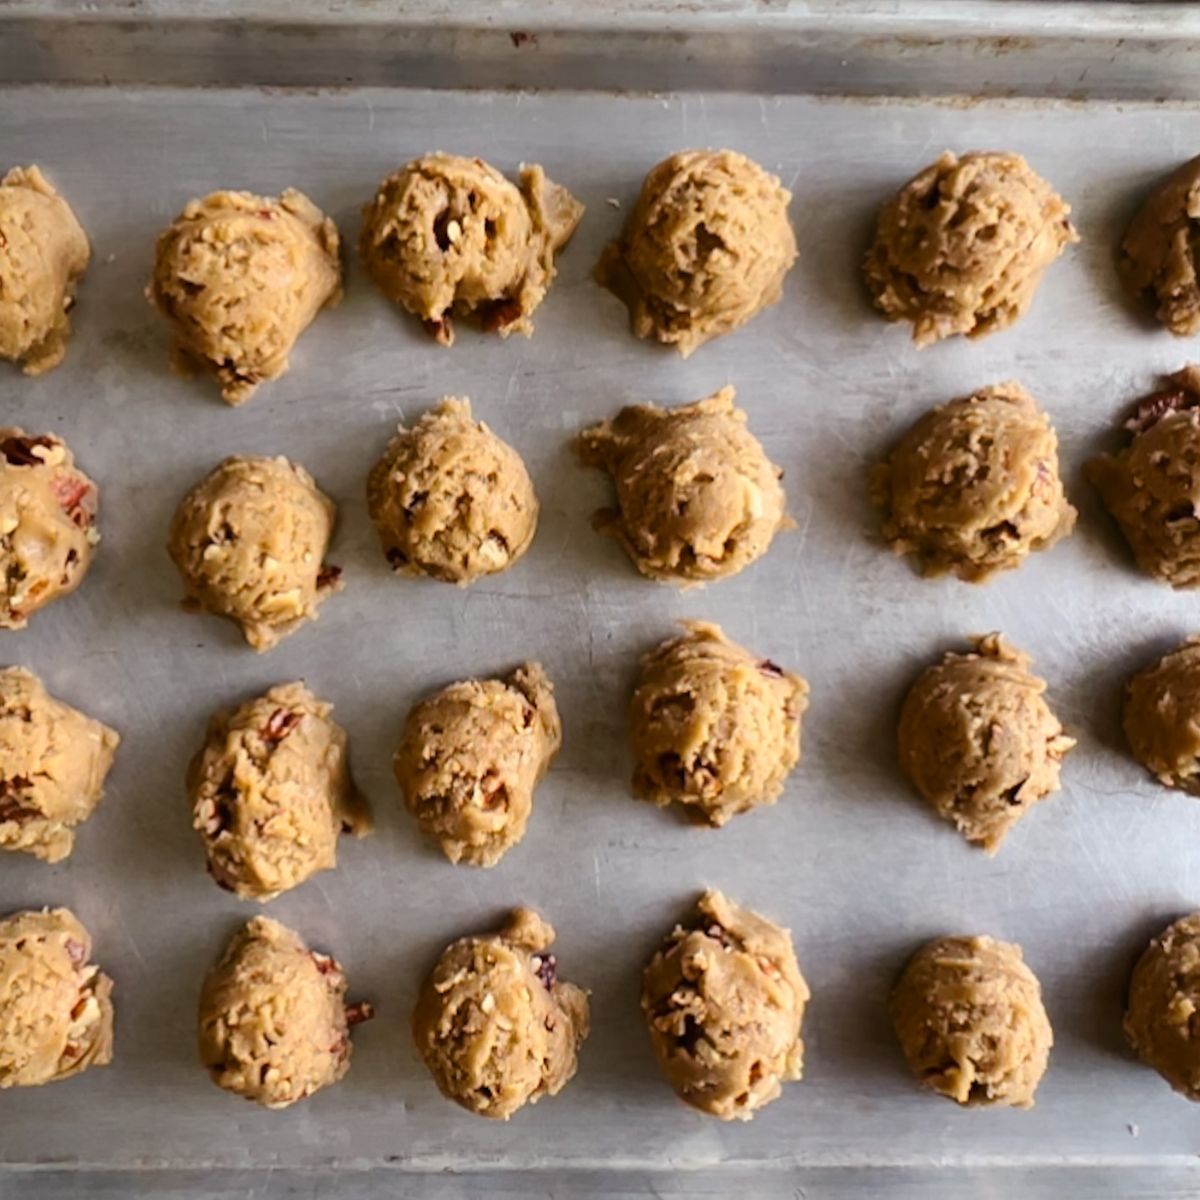 24 cookie dough balls on a baking sheet.